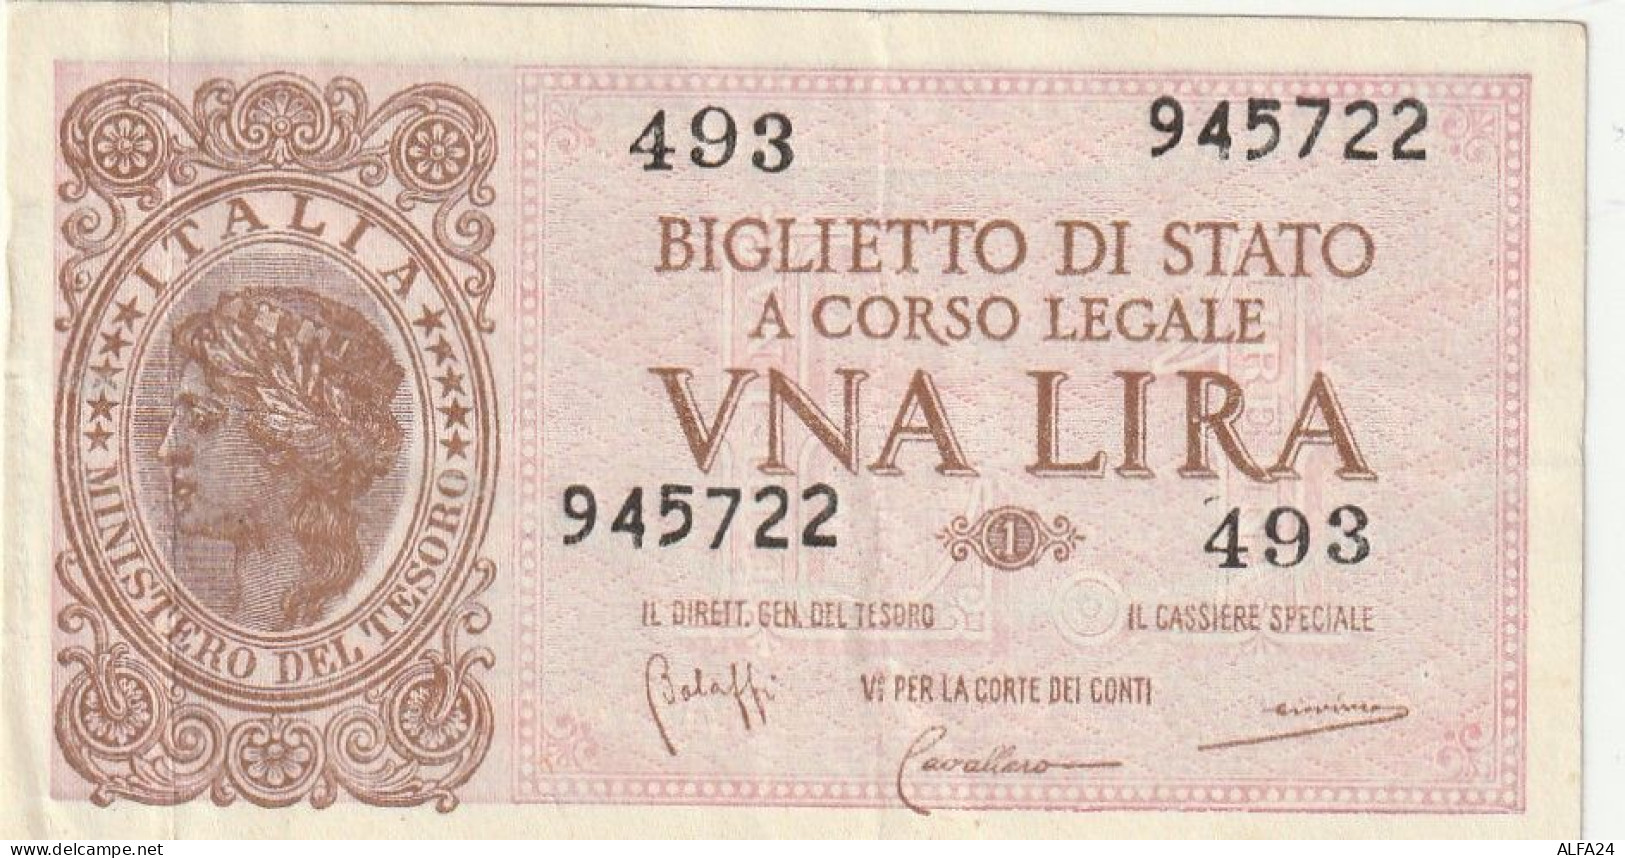 BANCONOTA BIGLIETTO DI STATO ITALIA 1 LIRA EF  (B_341 - Italia – 1 Lira